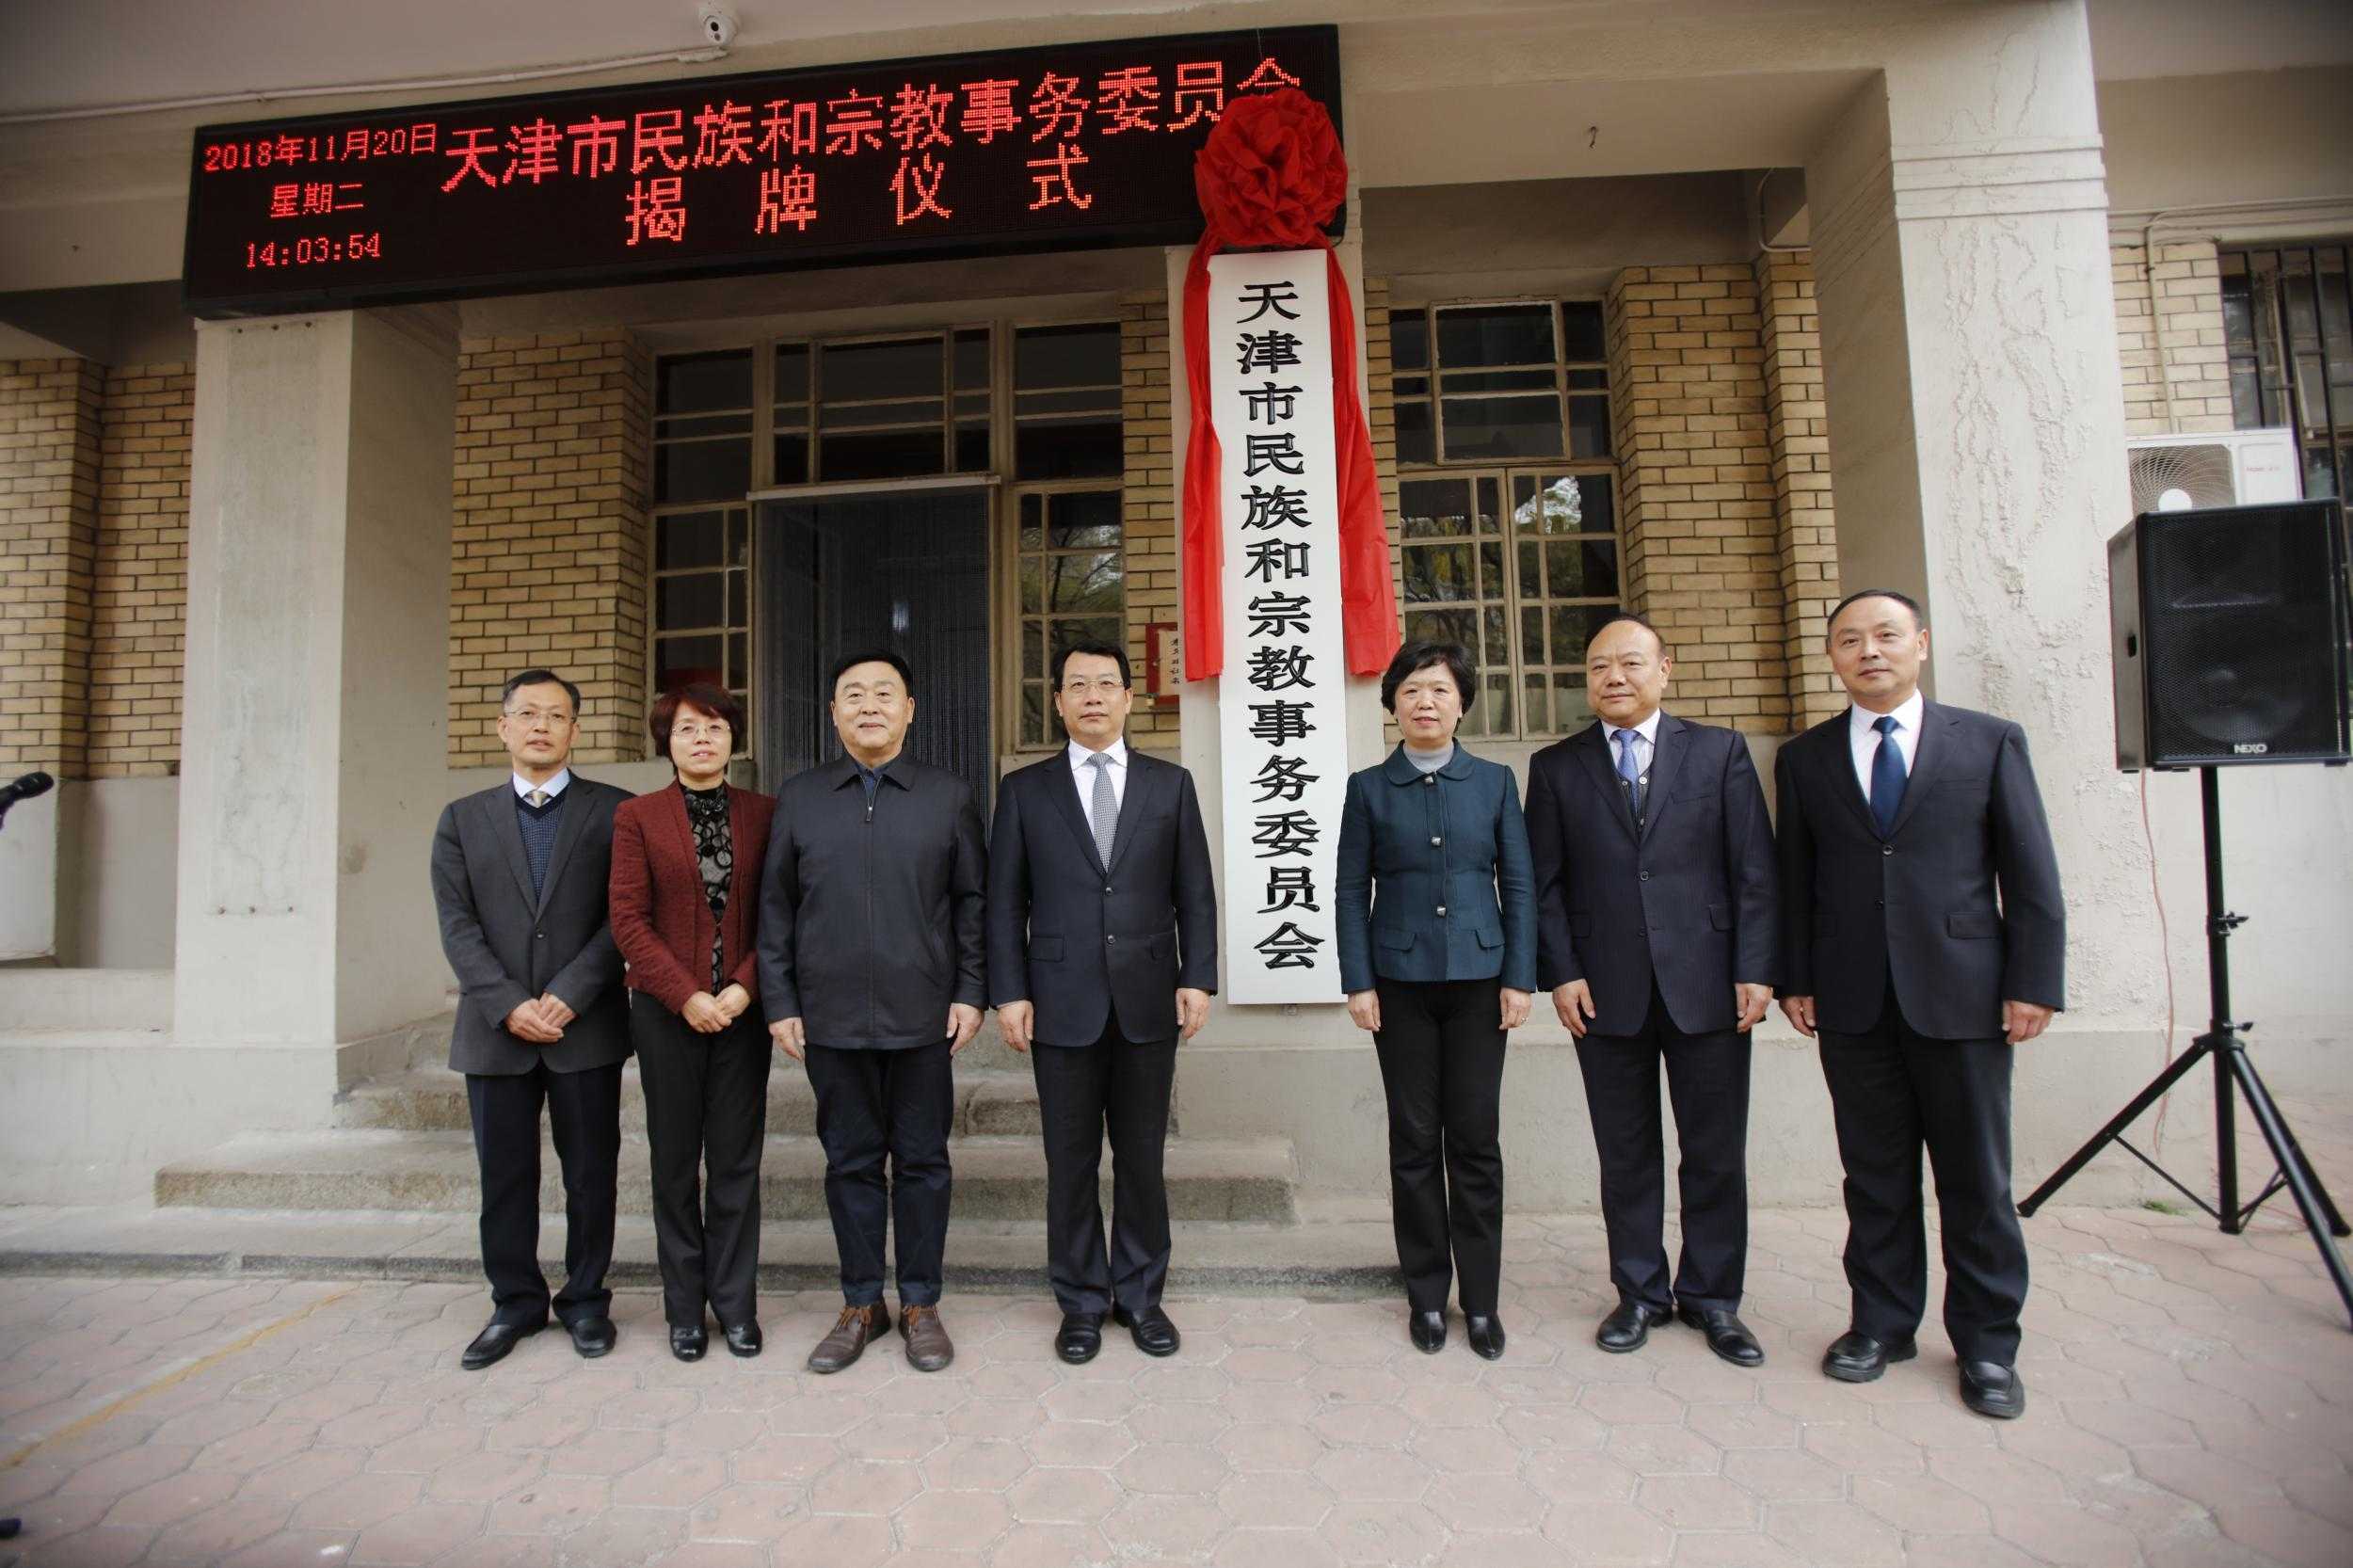 天津市民族和宗教事务委员会举行揭牌仪式-道音文化